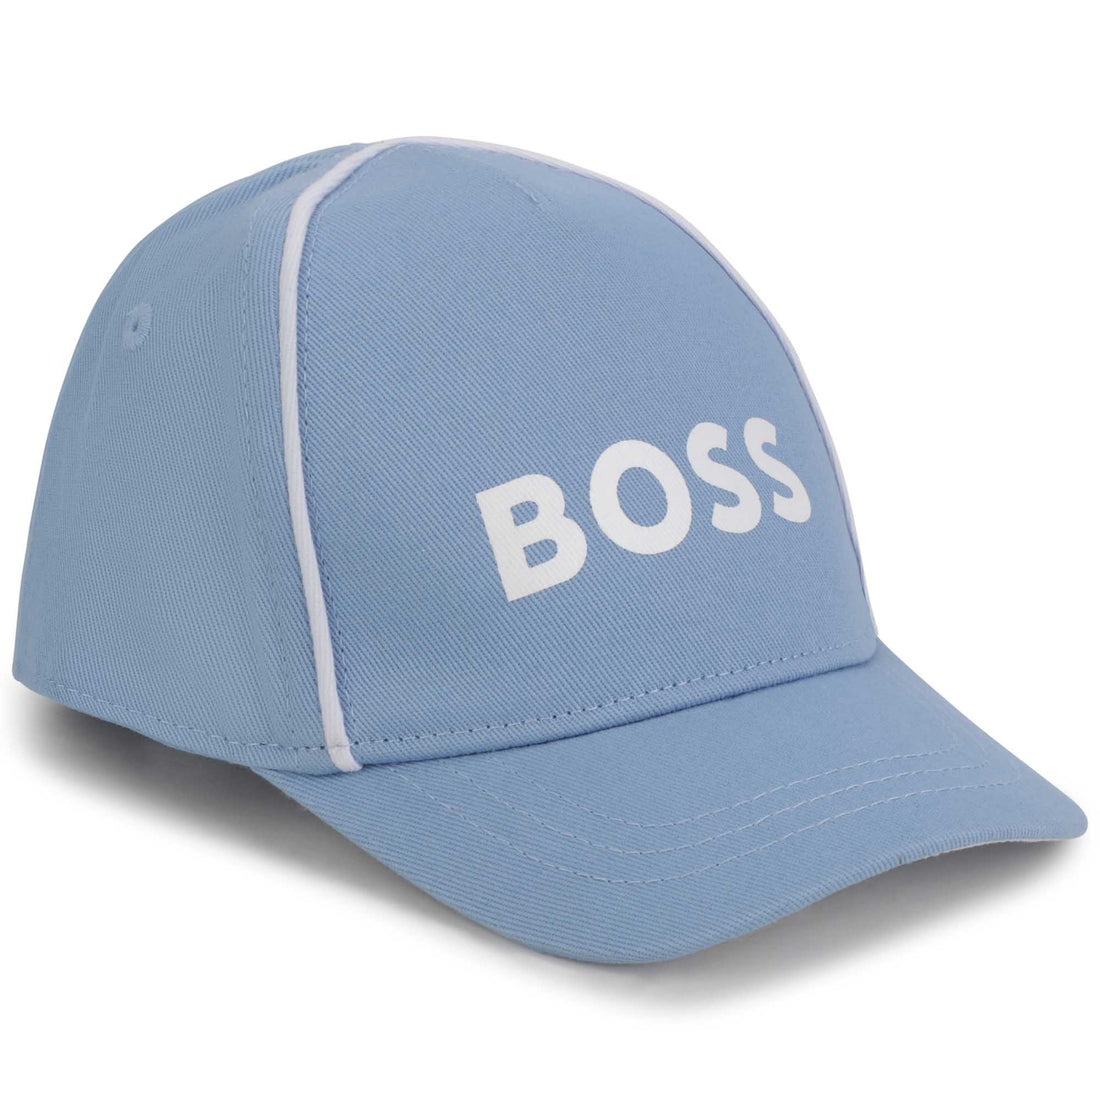 Hugo Boss Cap Style: J01139